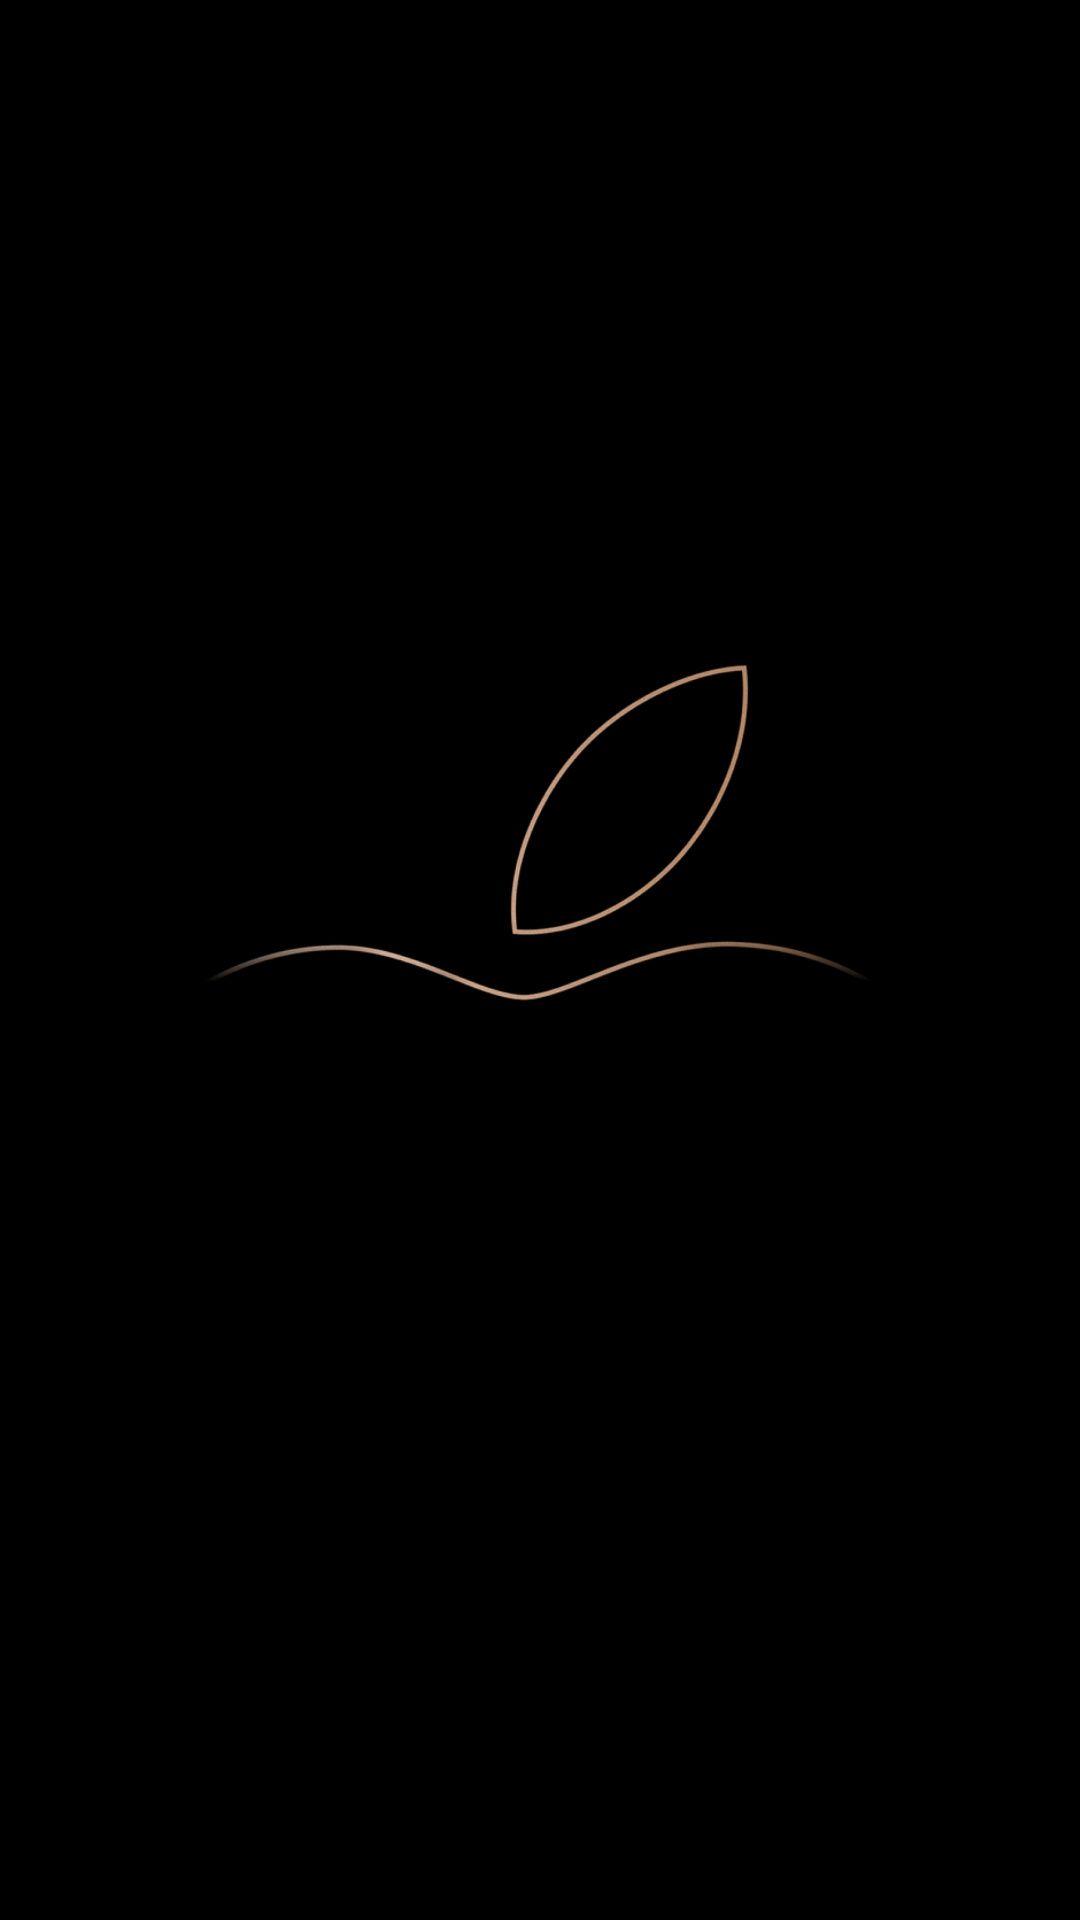 1080x1920 Apple, logo, hình nền tối thiểu, tối.  Hình nền logo Apple iPhone, Hình nền iPhone 6 plus, Video hình nền iPhone